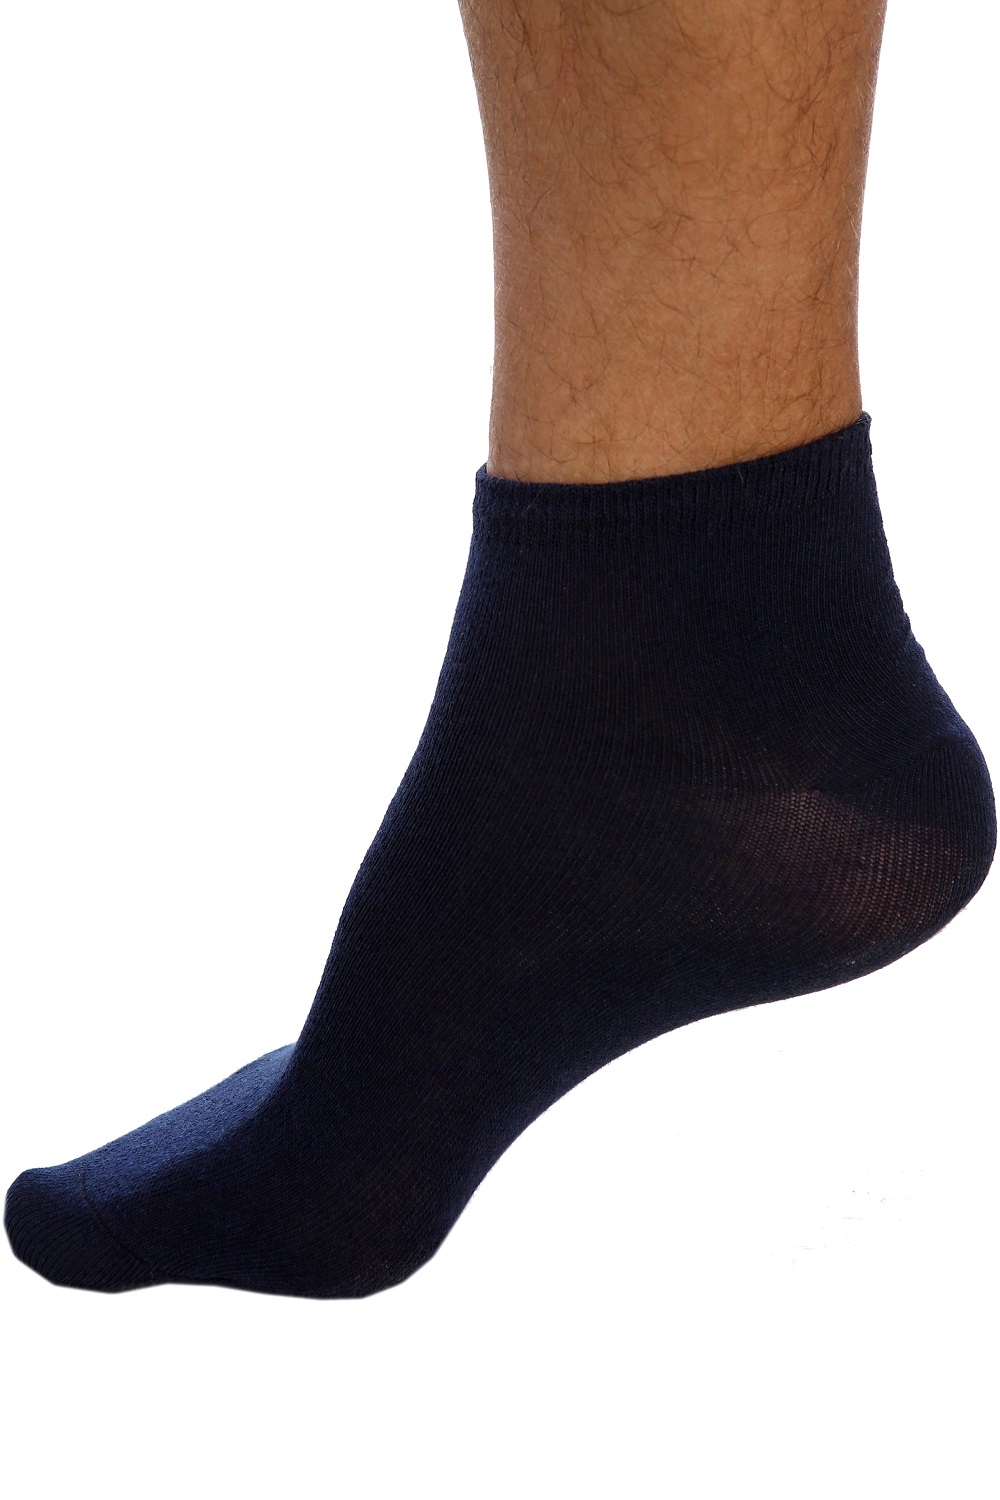 Короткие черные носки. Носки мужские однотонные. Мужские однотонные черные носки. Носки мужские черные короткие. Мужские носки одното.